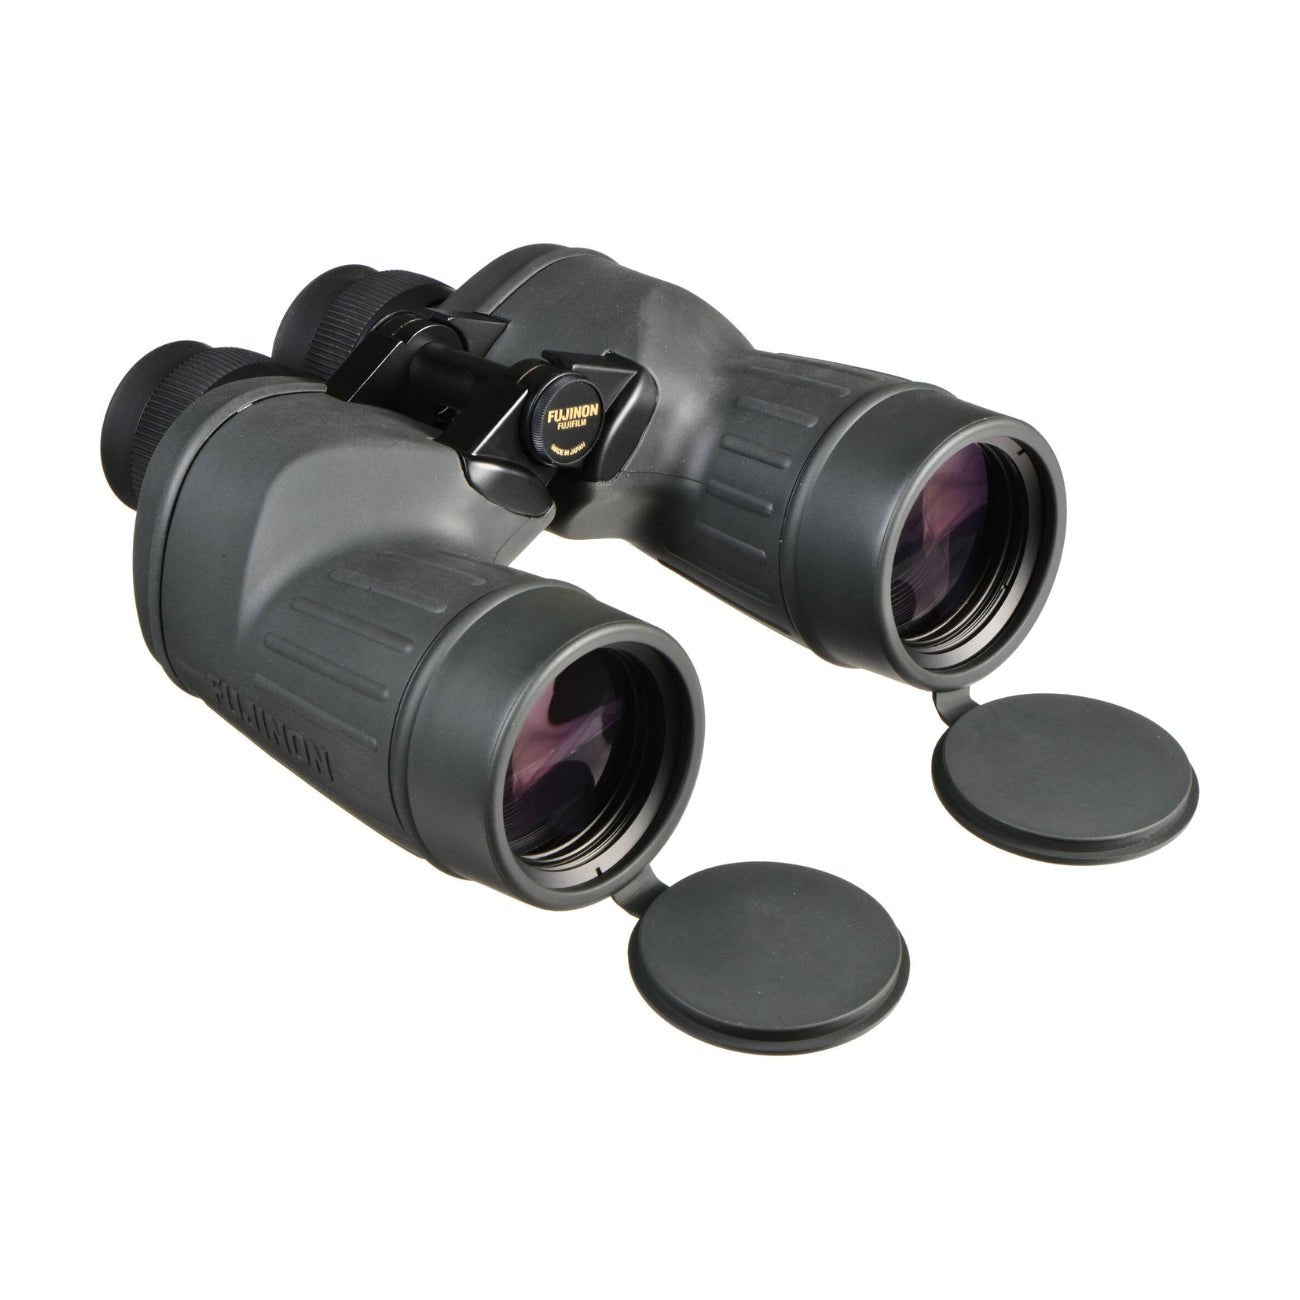 Fujinon 7x50 FMTRC-SX Polaris Binoculars